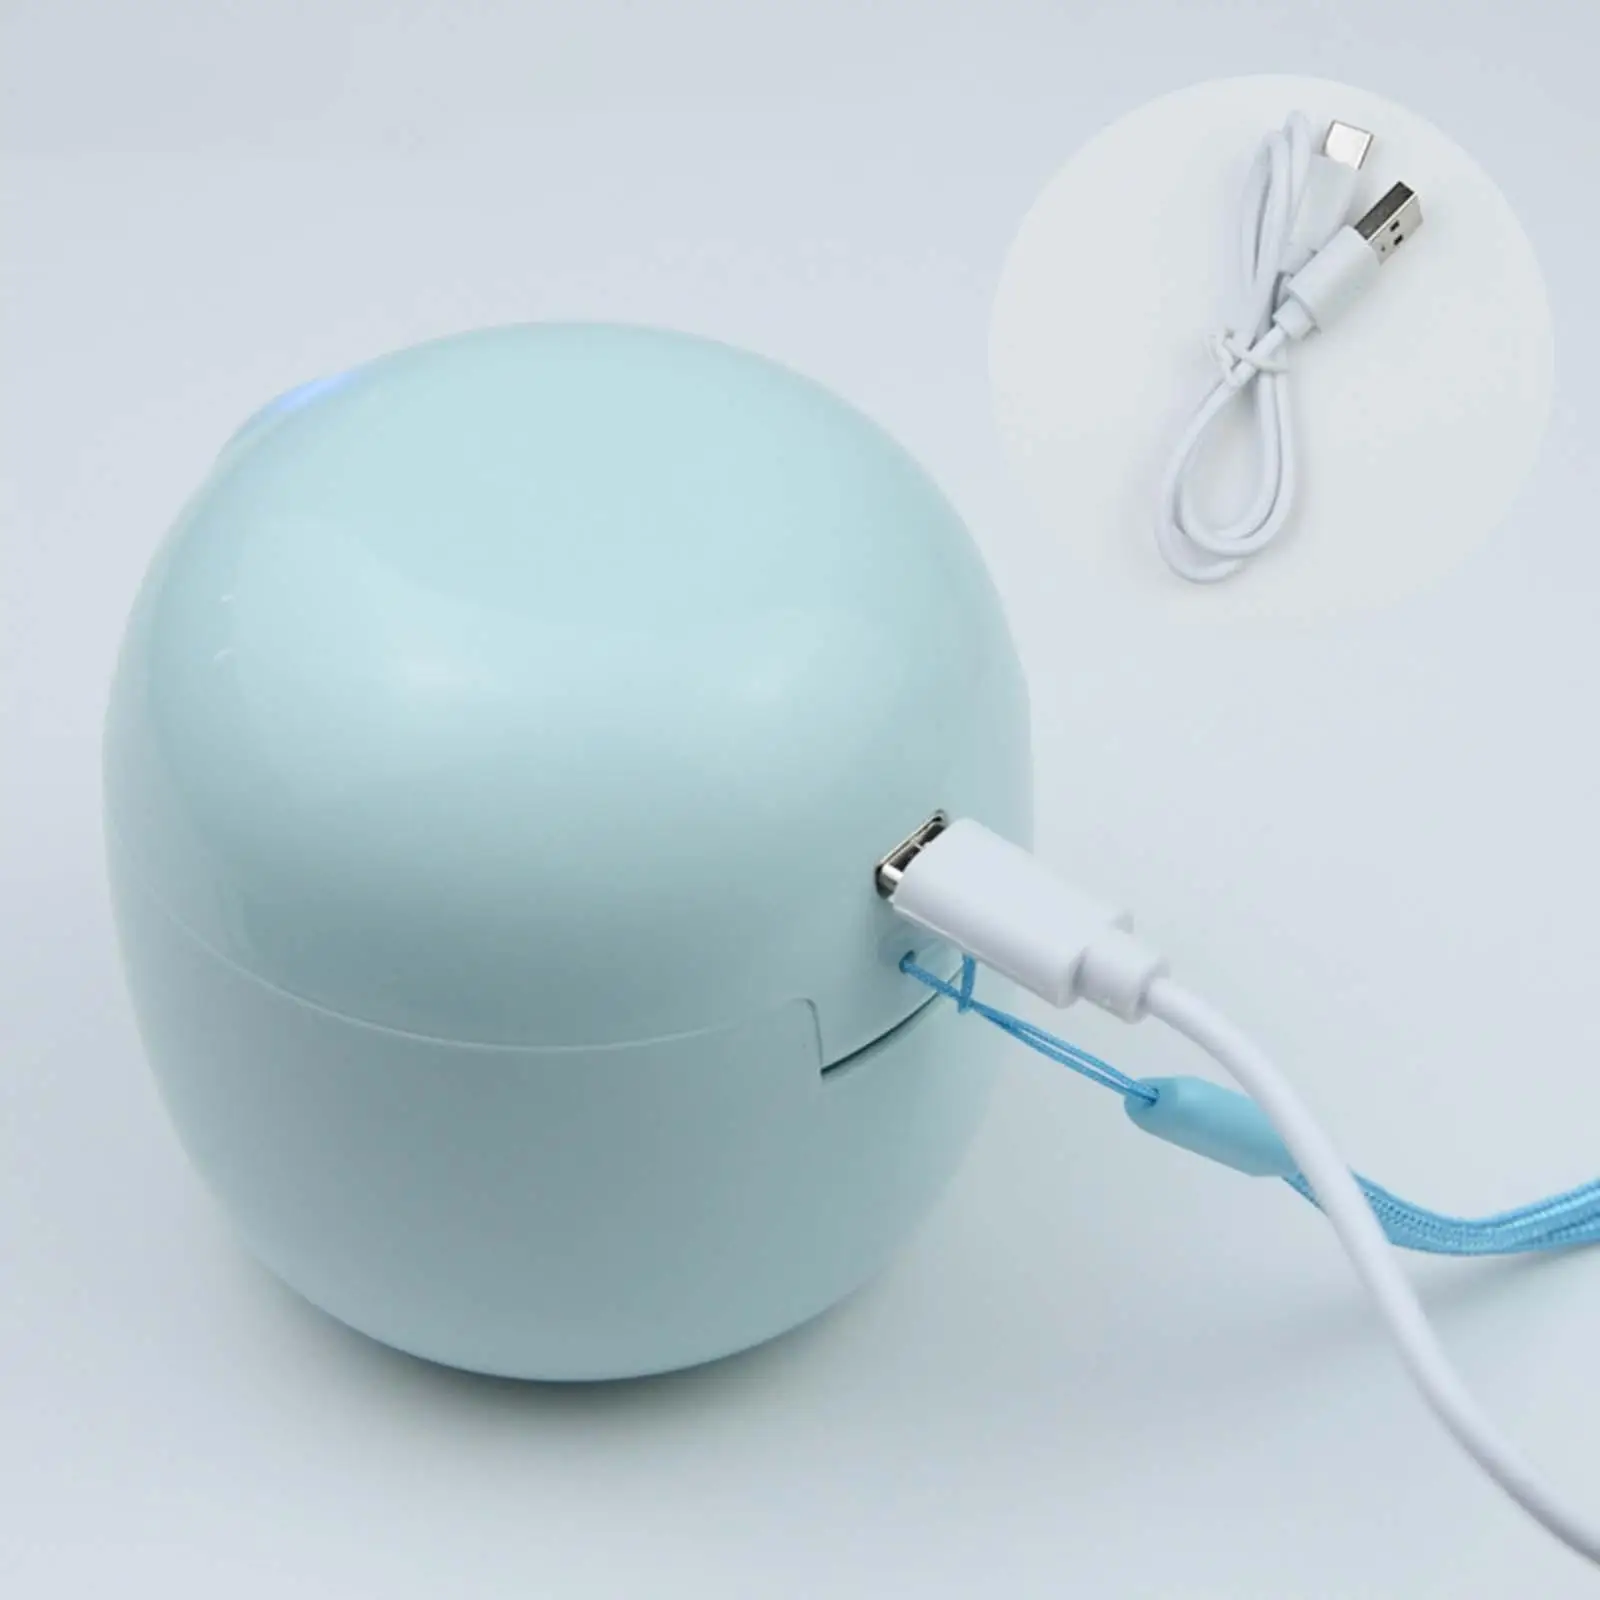  Light Sanitizer Box Ultraviolet LED Mini for Pacifier Toothbrush Earphone